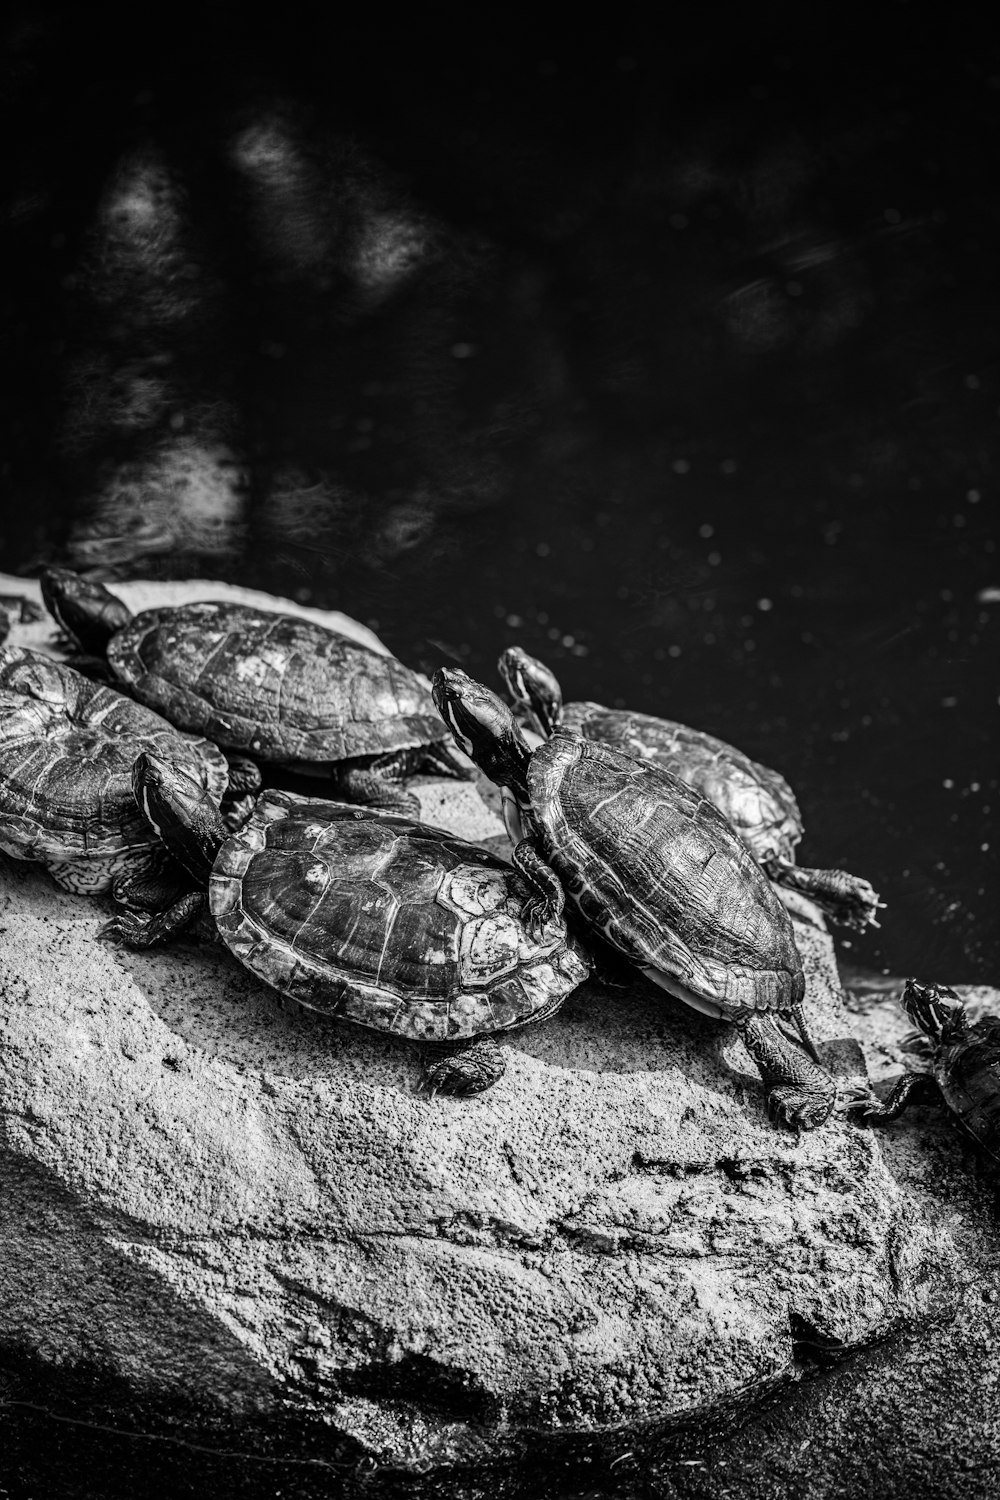 tartaruga sull'acqua nella fotografia in scala di grigi